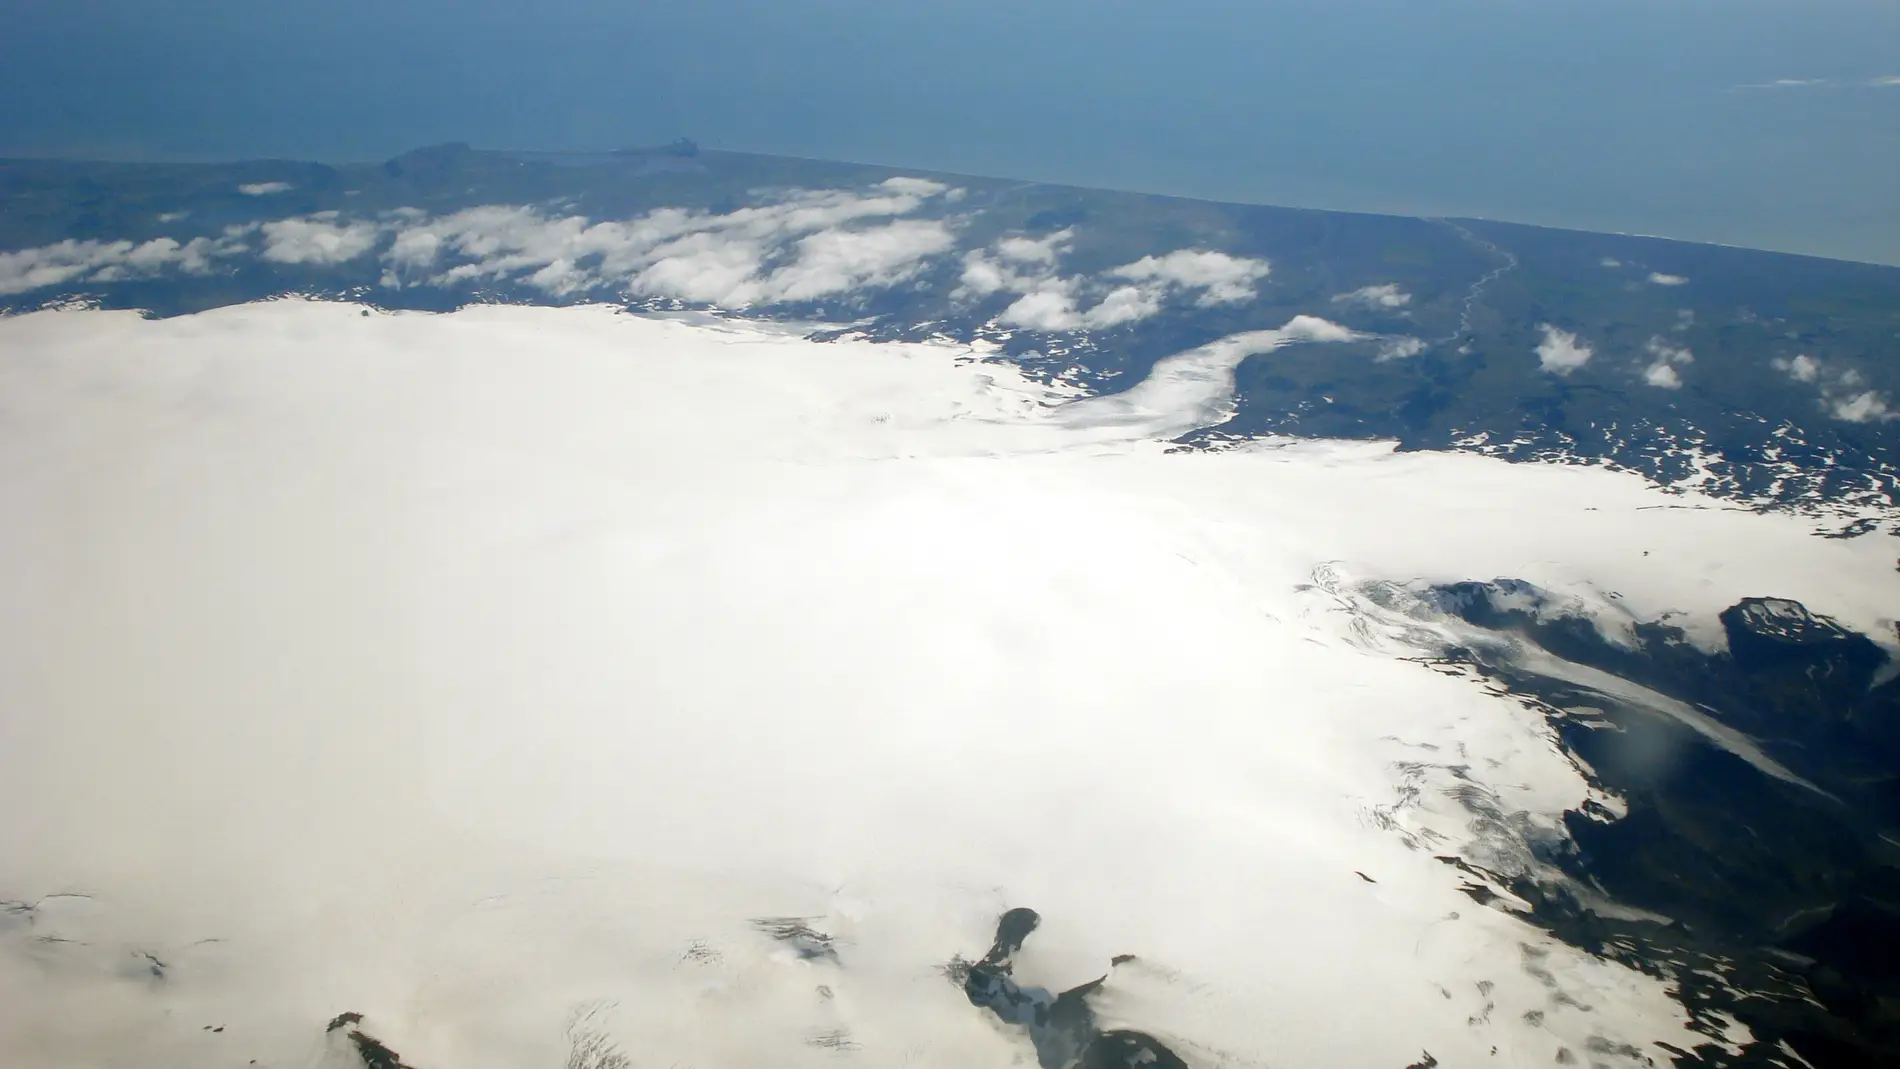 Glaciar de Mýrdalsjökull bajo el que se encuentra enterrado el volcán Katla